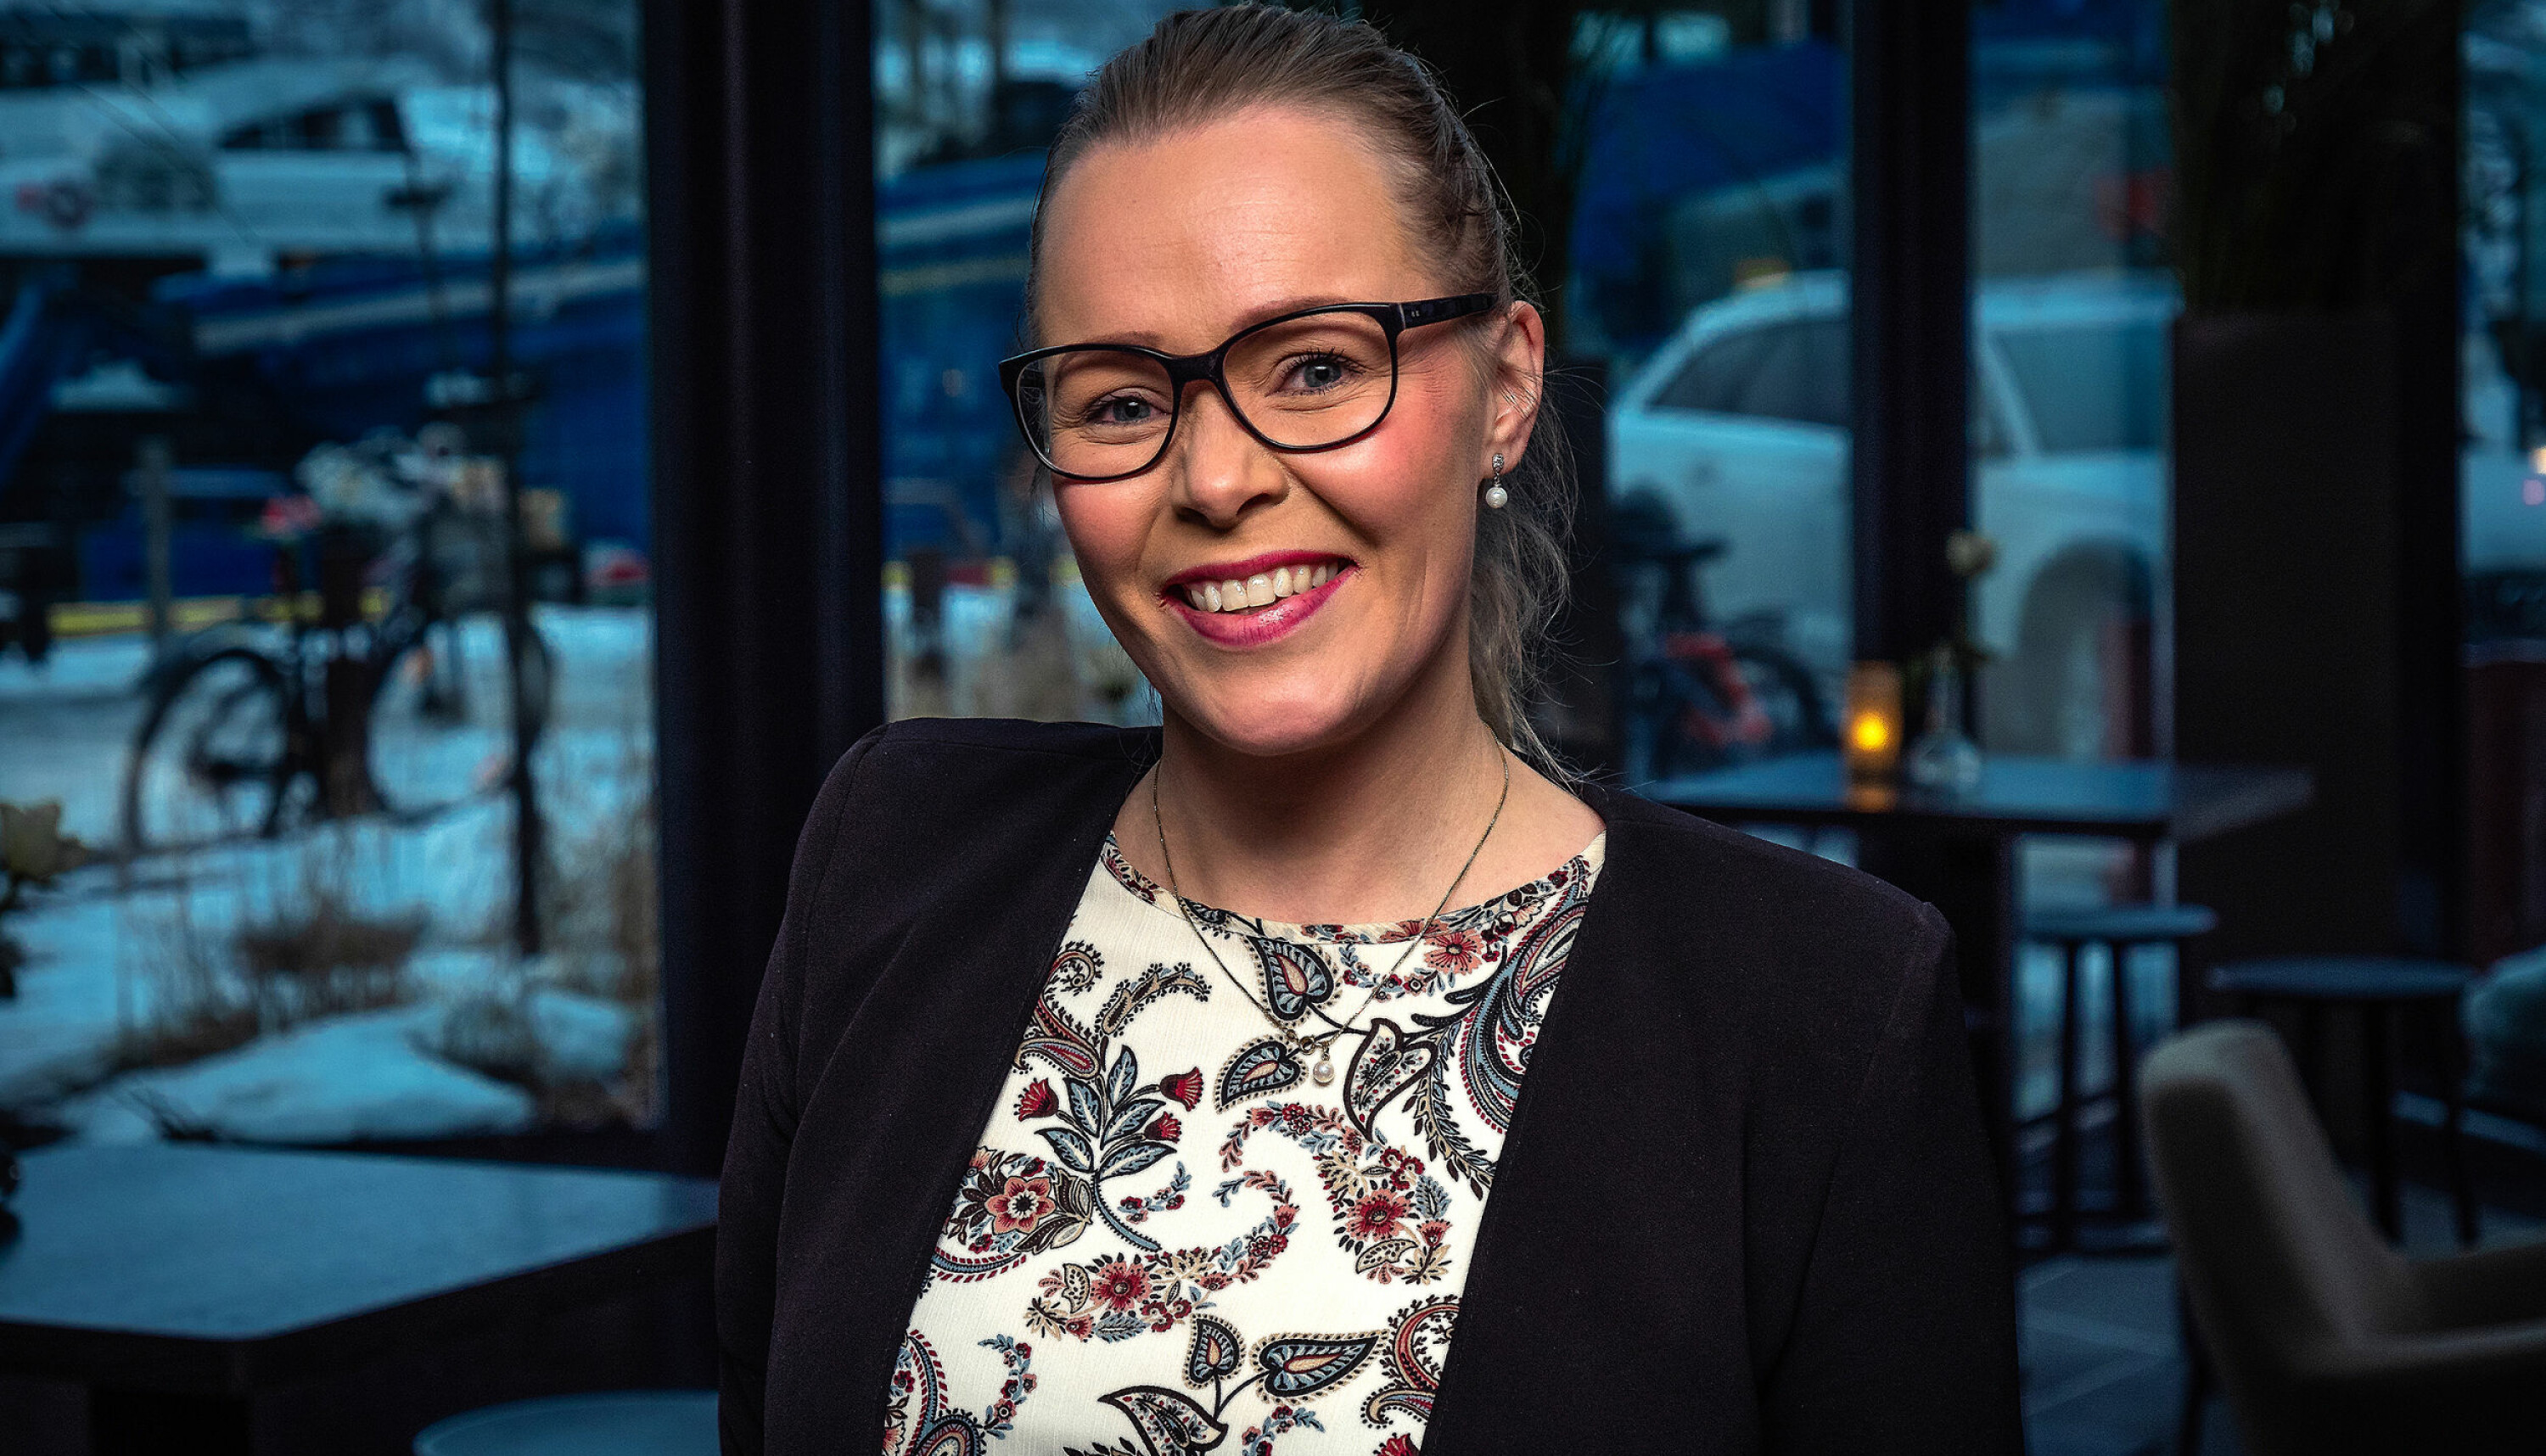 HELT SJEF: Ida Kristine Jakobsen (33) ble hotelldirektør på Clarion The Edge i Tromsø vinteren 2019, og rakk et års normal drift før pandemien rammet. Nå gleder hun seg til å vende tilbake til normalen igjen.